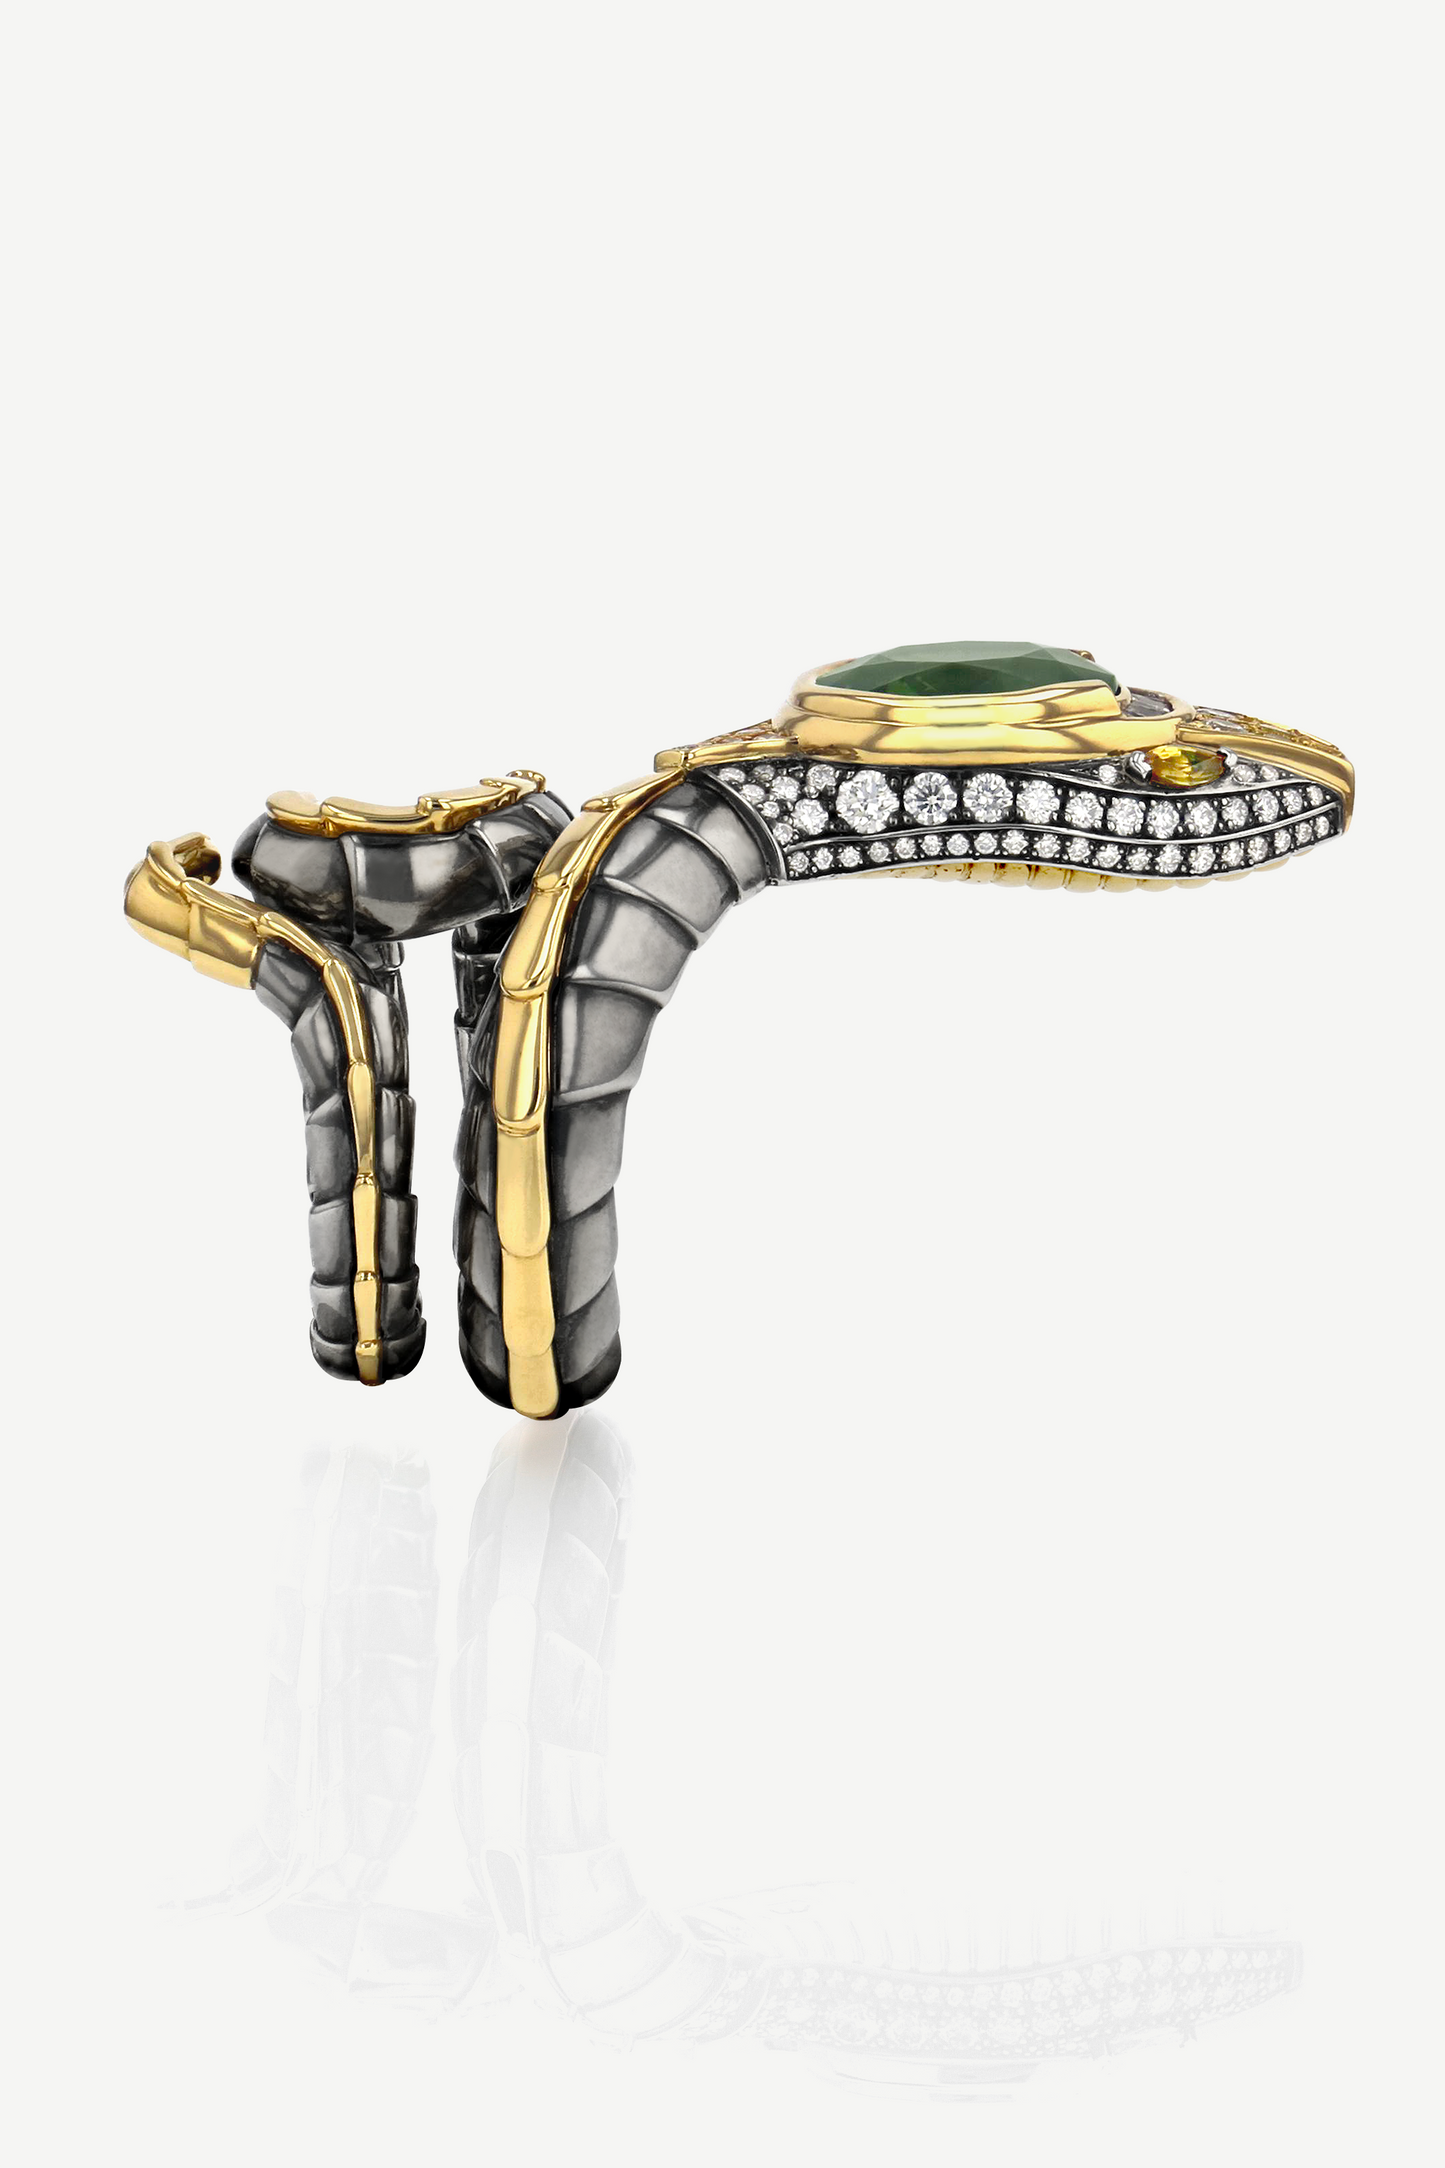 Green Sapphire Serpent Ring